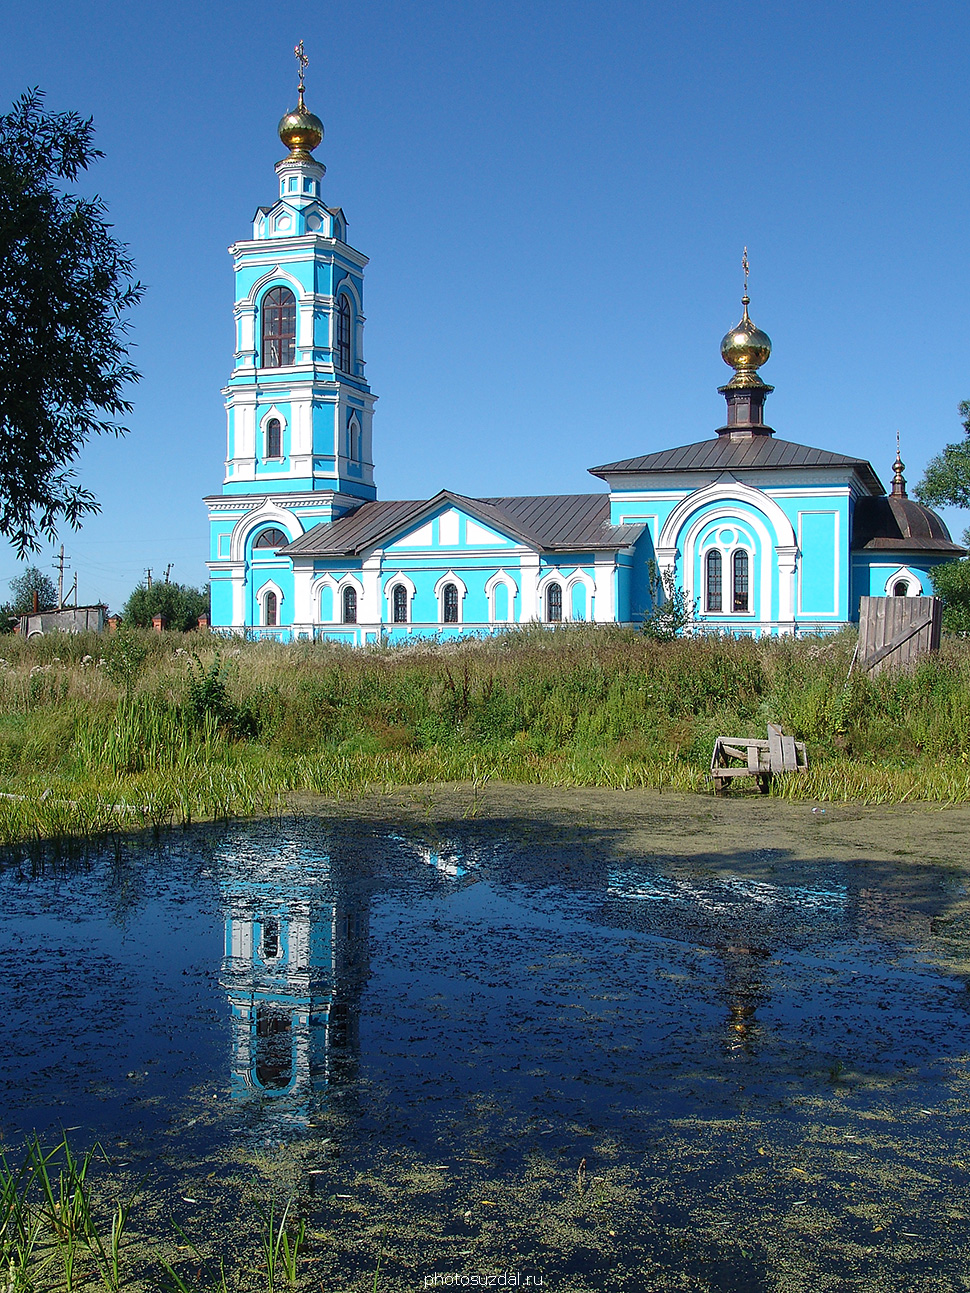 Борисоглебская церковь с колокольней в селе Ляховицы